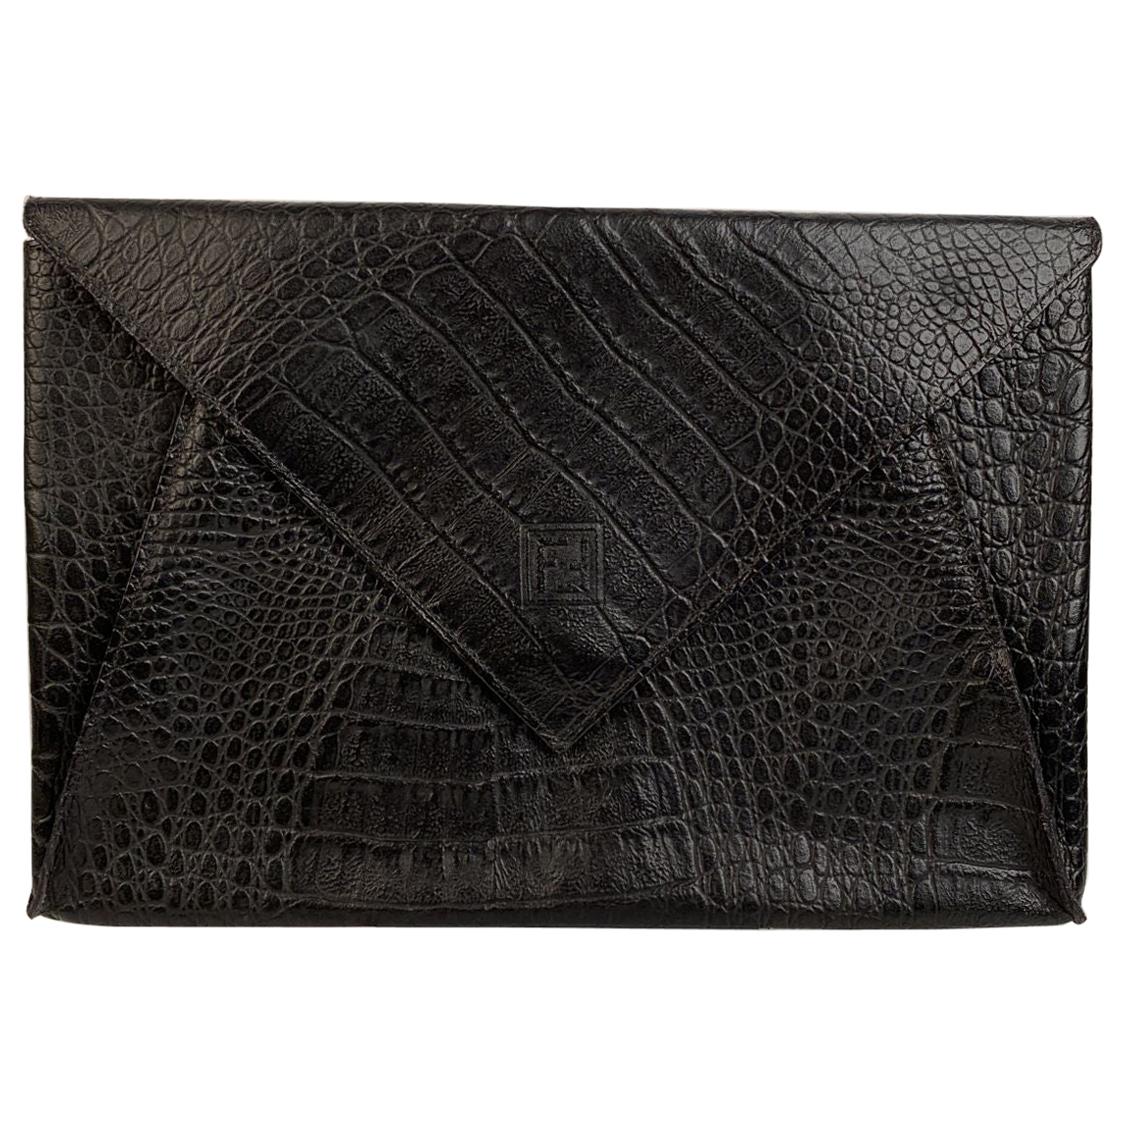 Fendi Vintage Black Embossed Portfolio Envelope Clutch Bag